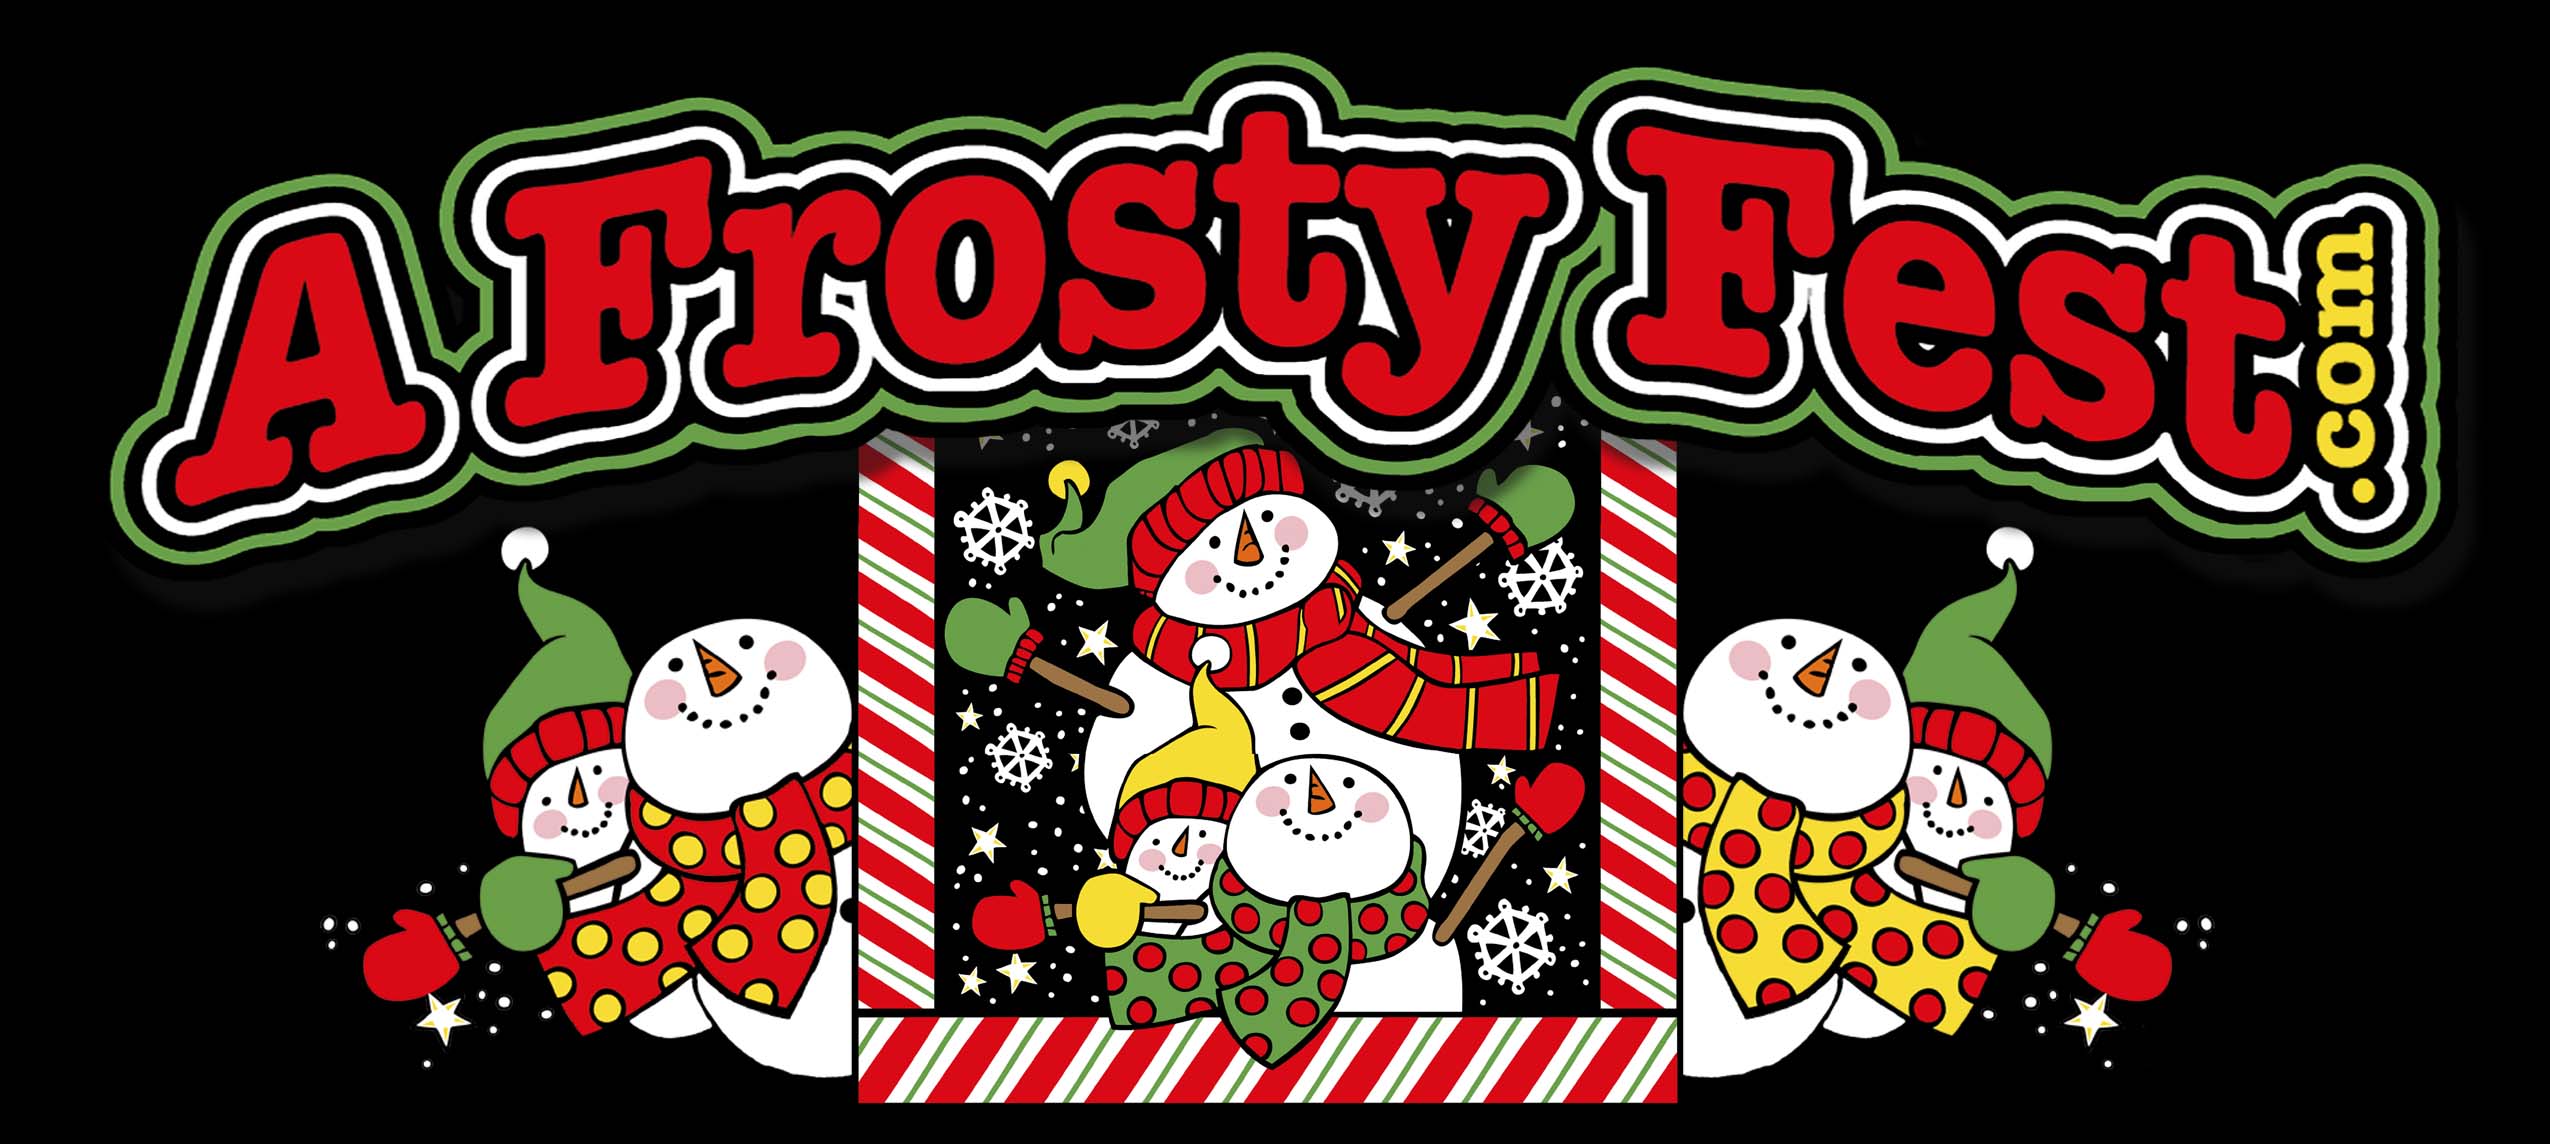 A Frosty Fest